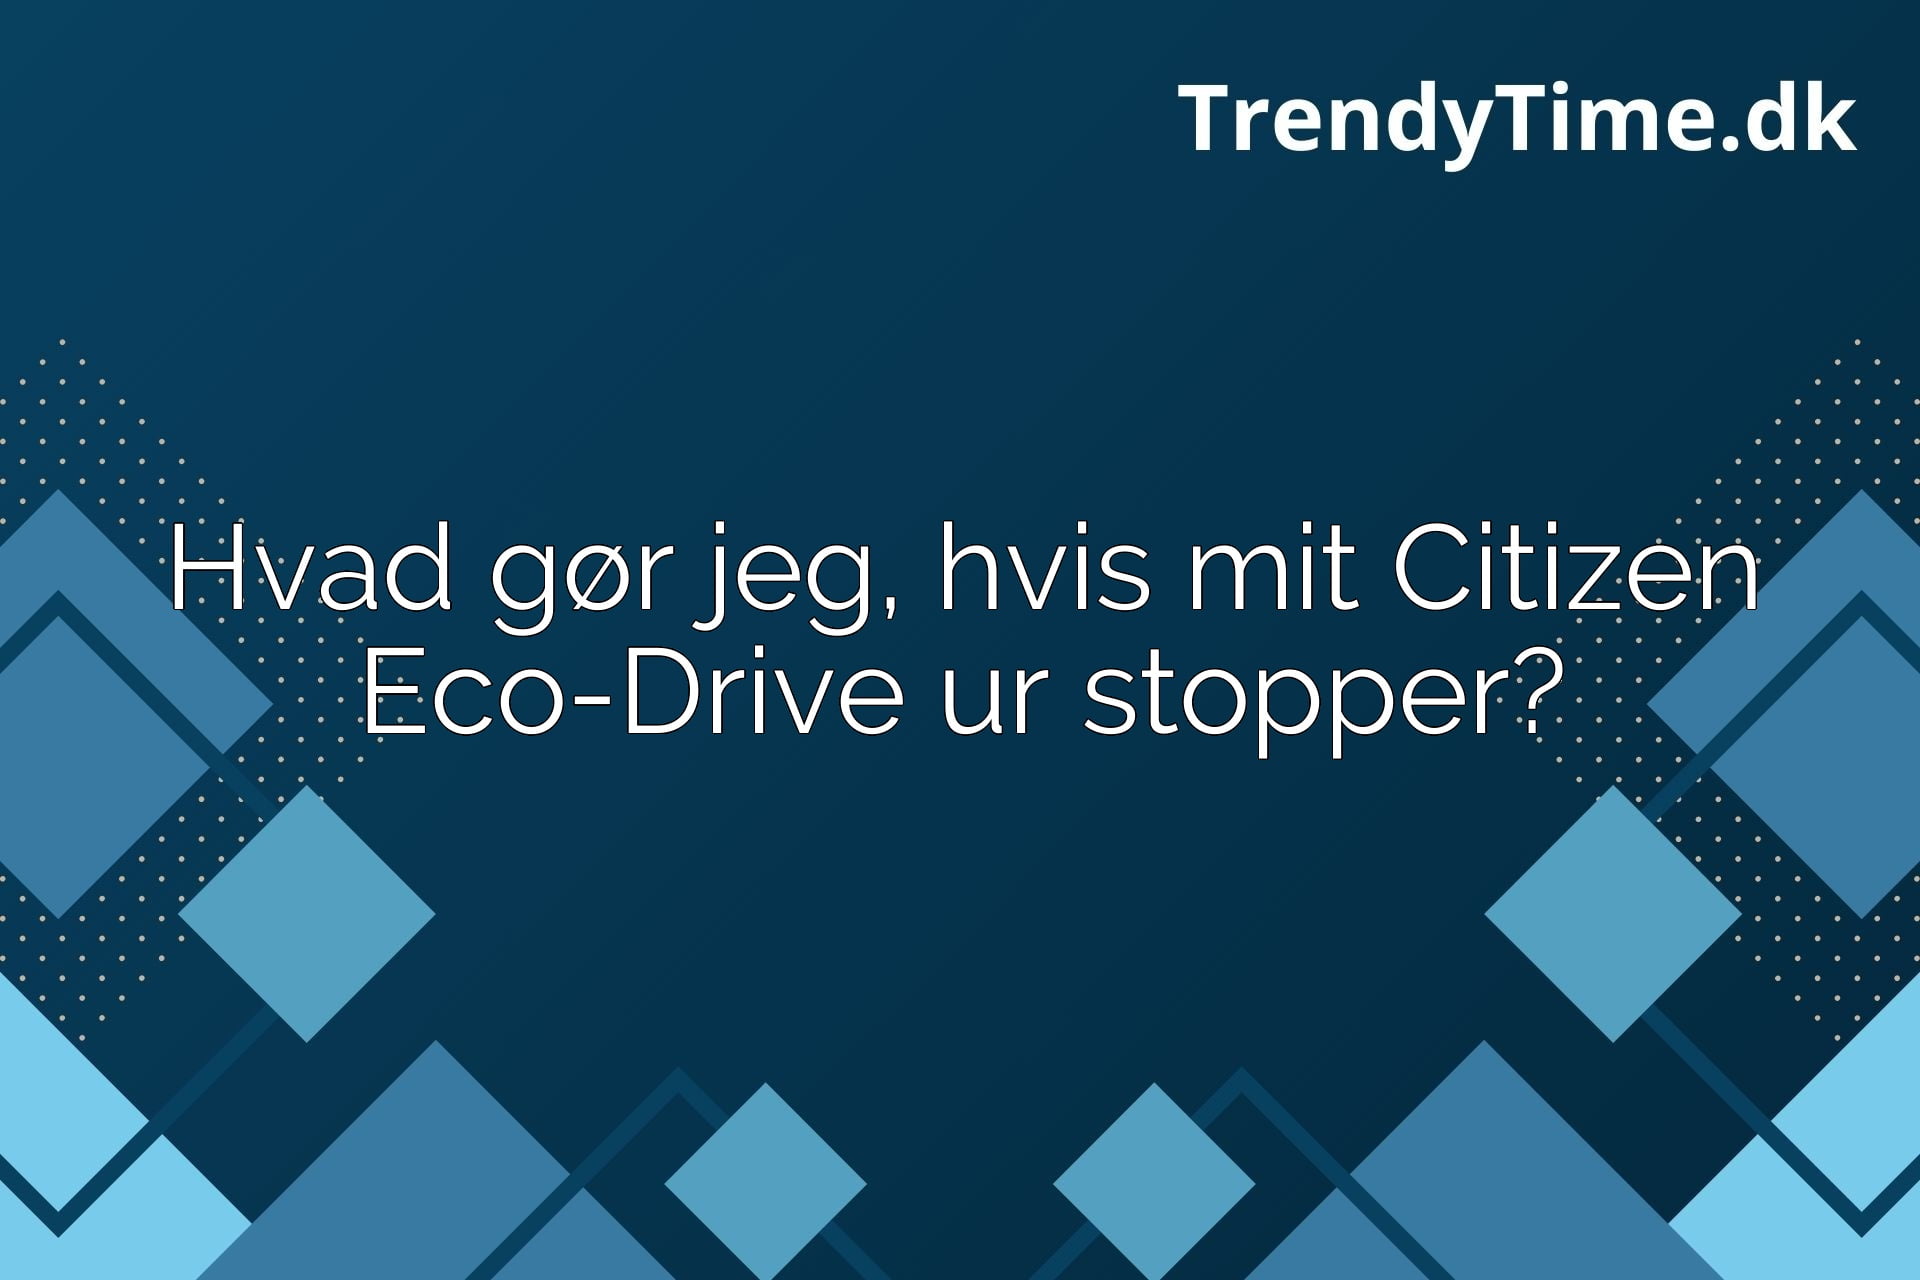 Guide: Hvad gør jeg, hvis mit Citizen Eco-Drive ur stopper?